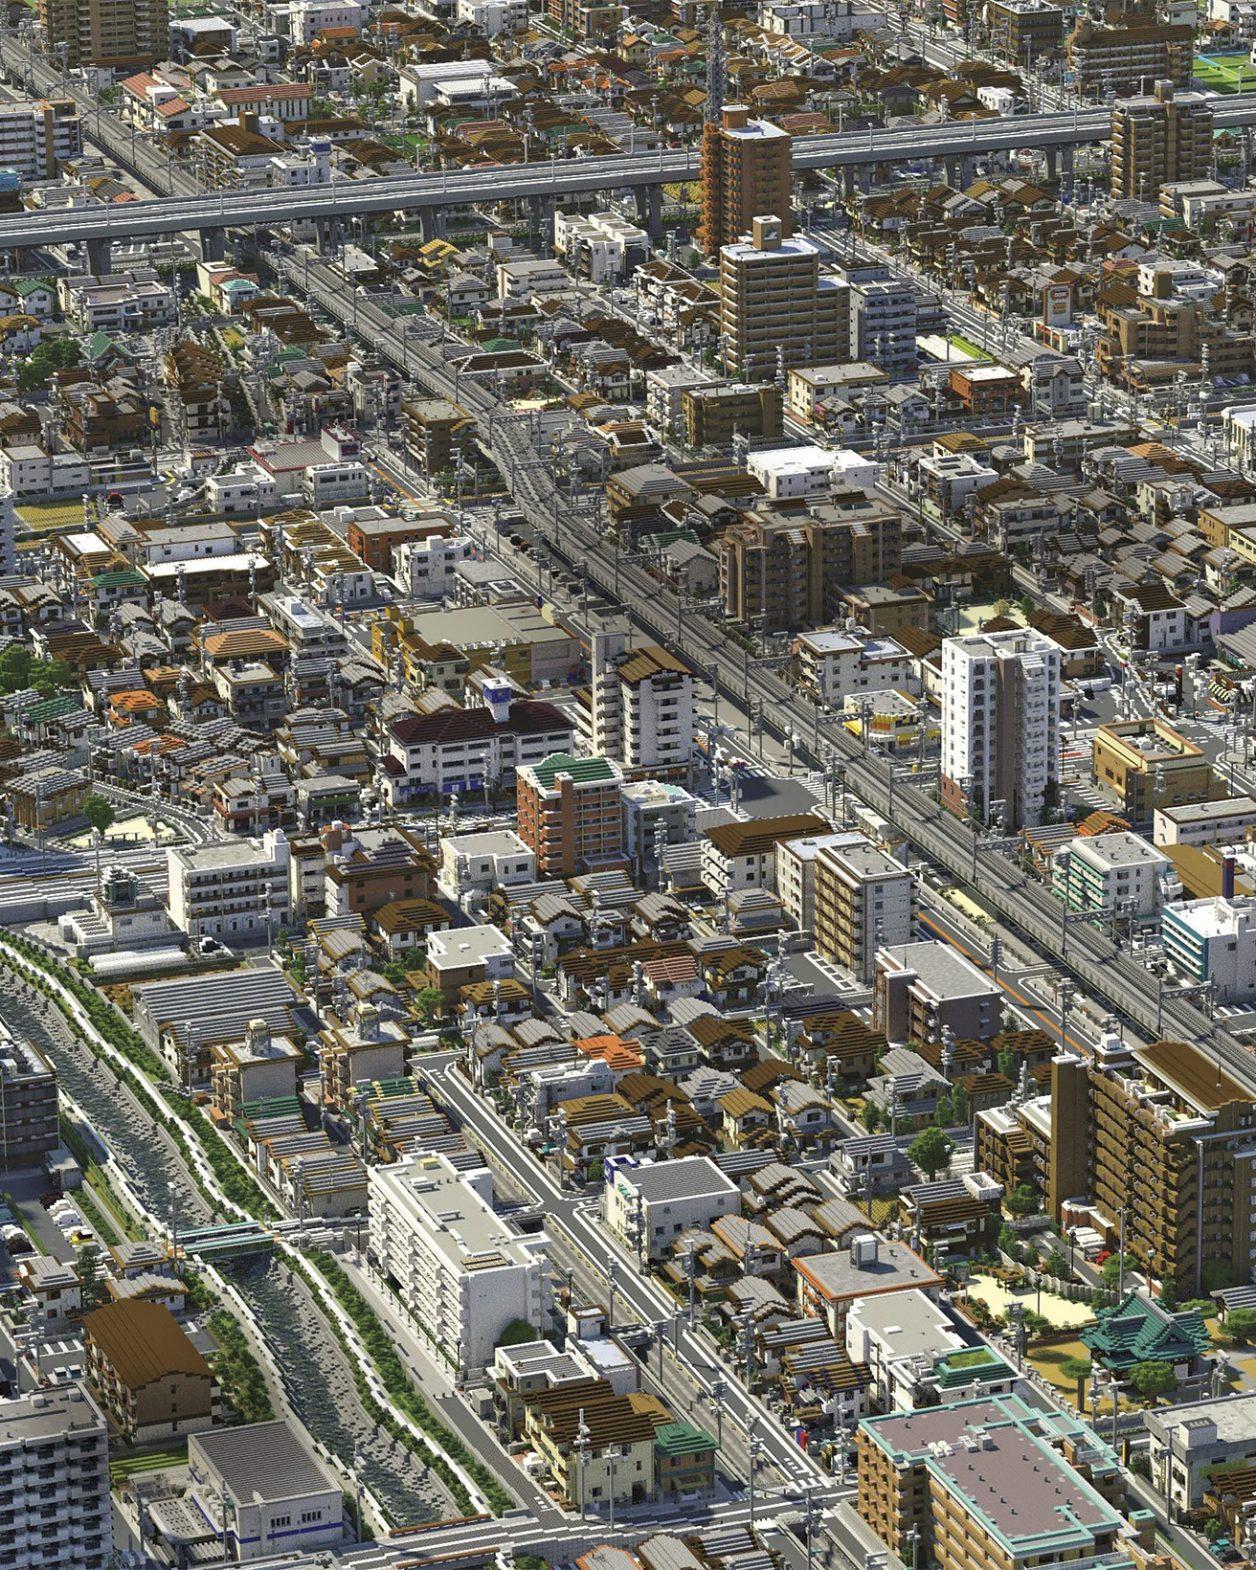 どこか懐かしい街並み…なんと写真じゃない!? 架空の都市を作り続ける「マイクラ」の一大プロジェクト。